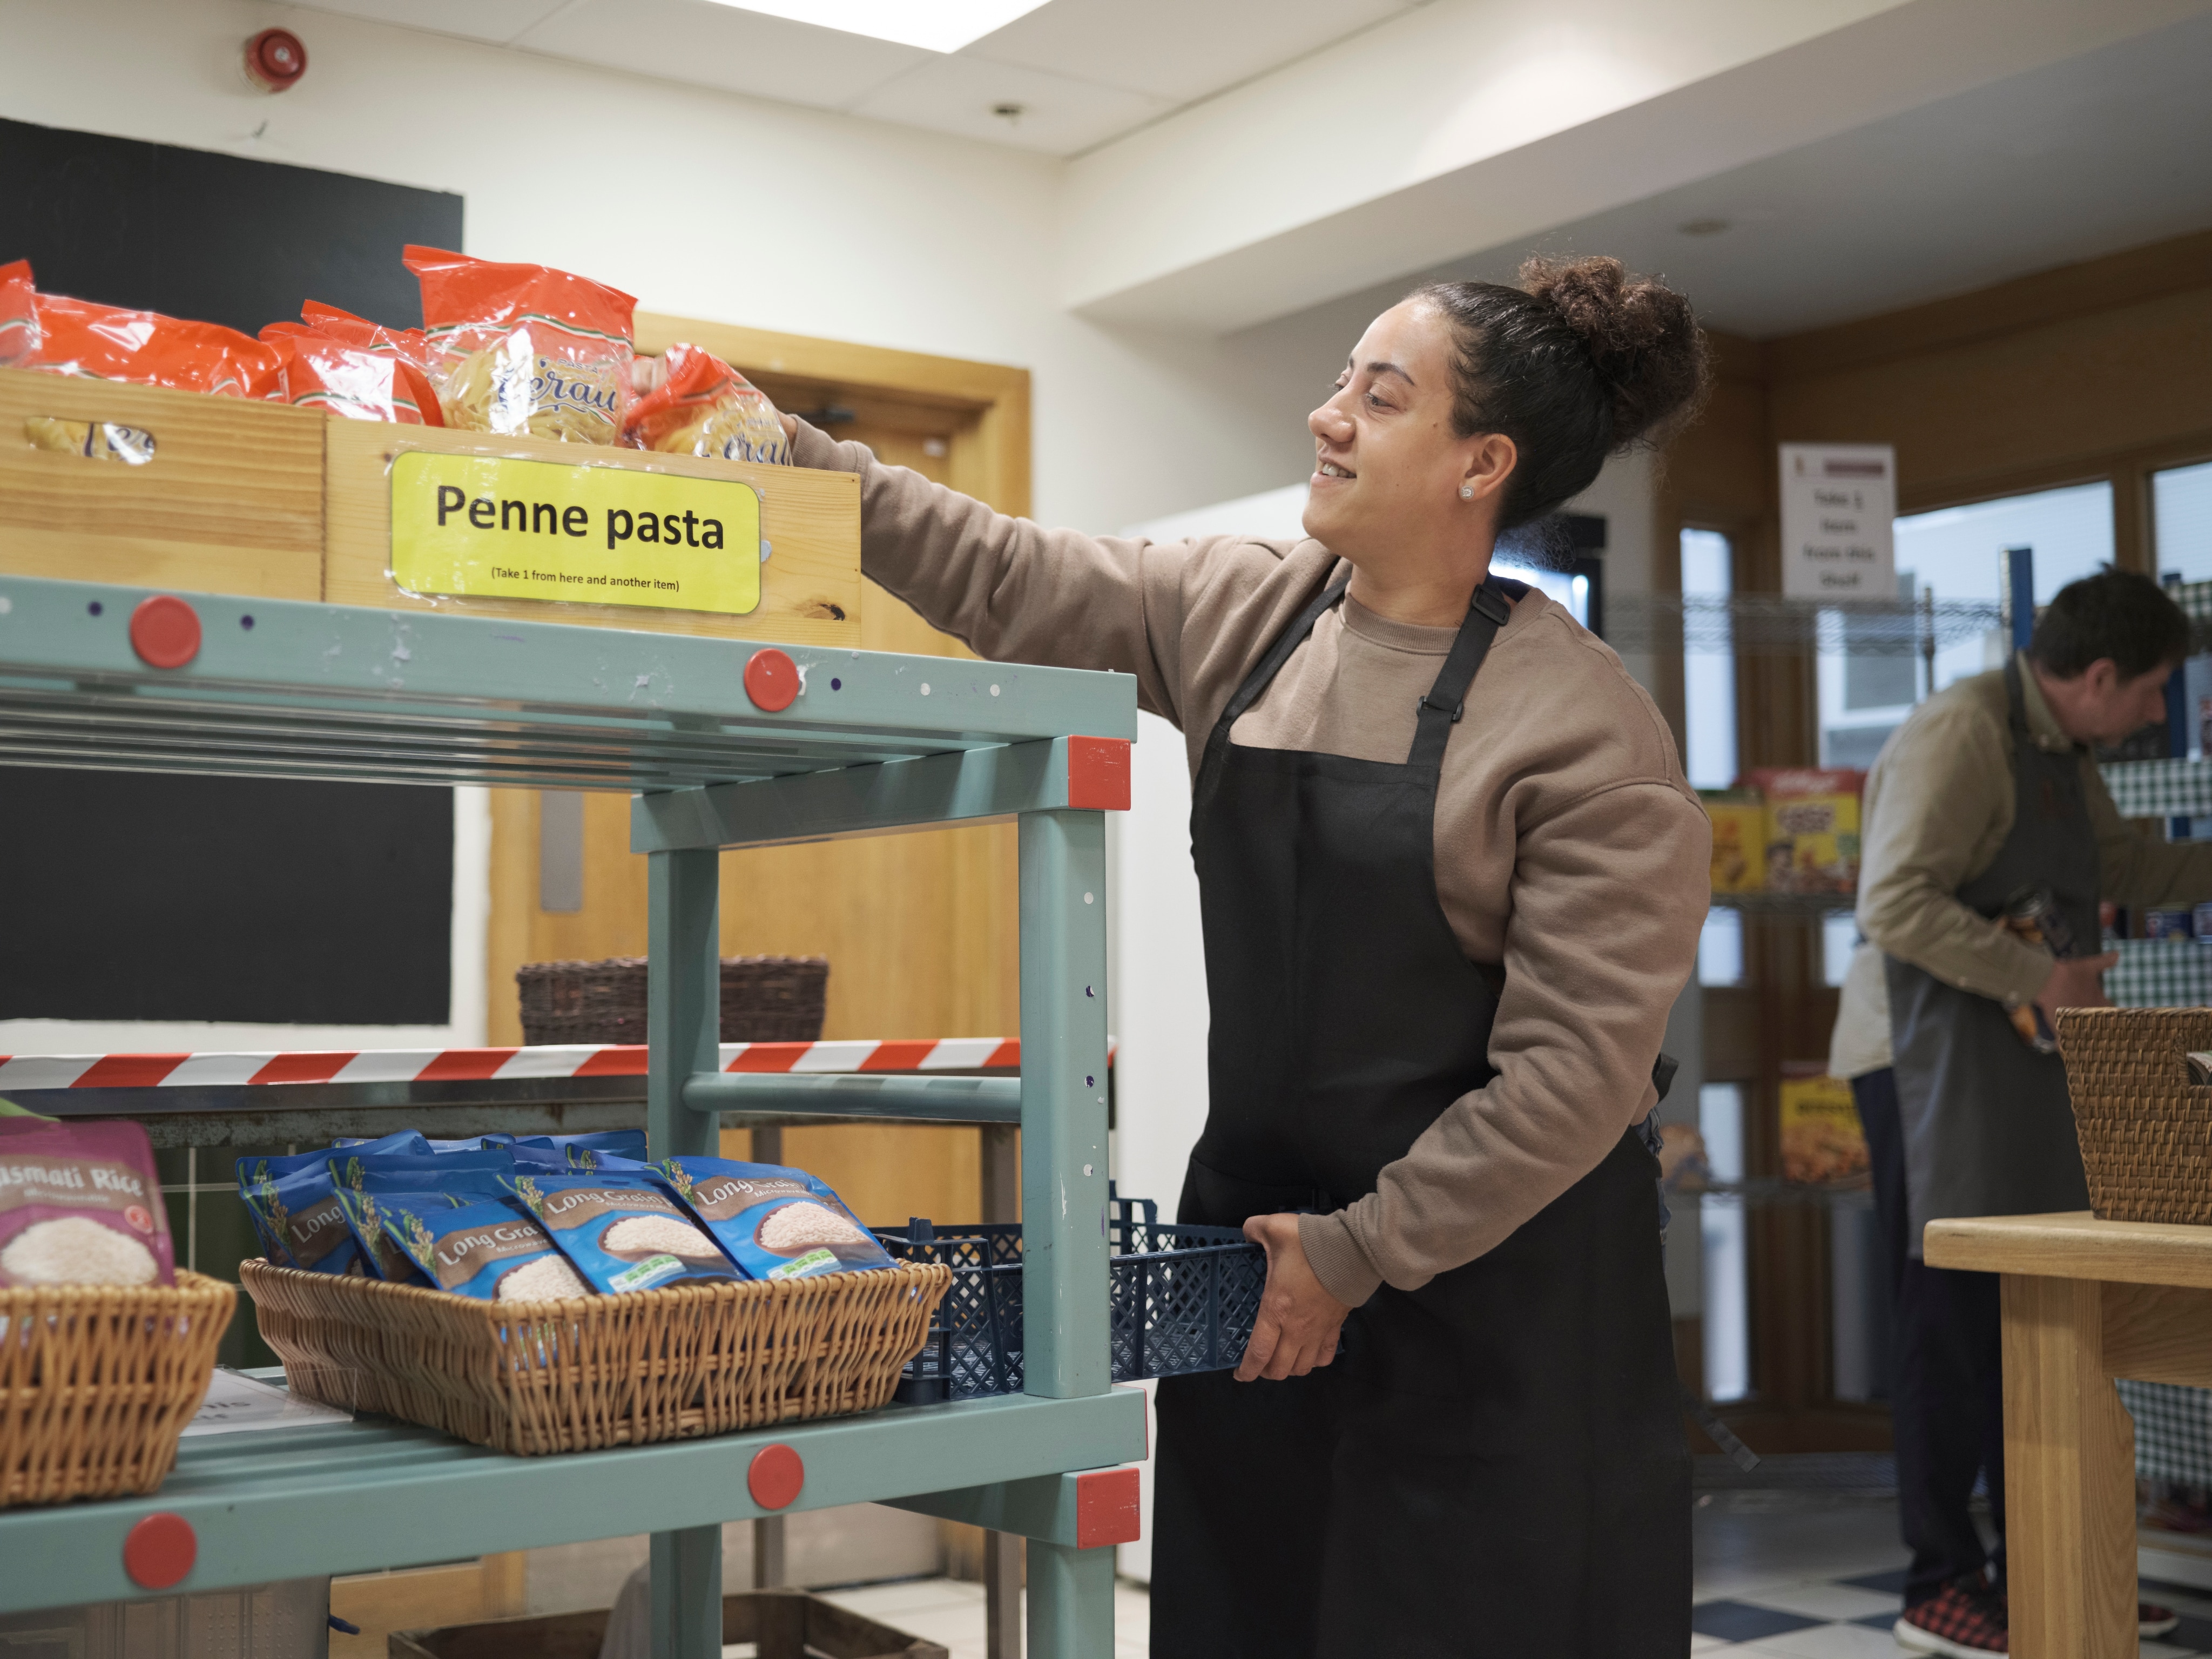 Une employée d’une banque alimentaire prend des pâtes sur une étagère. Derrière elle, un autre employé prend également de la nourriture.